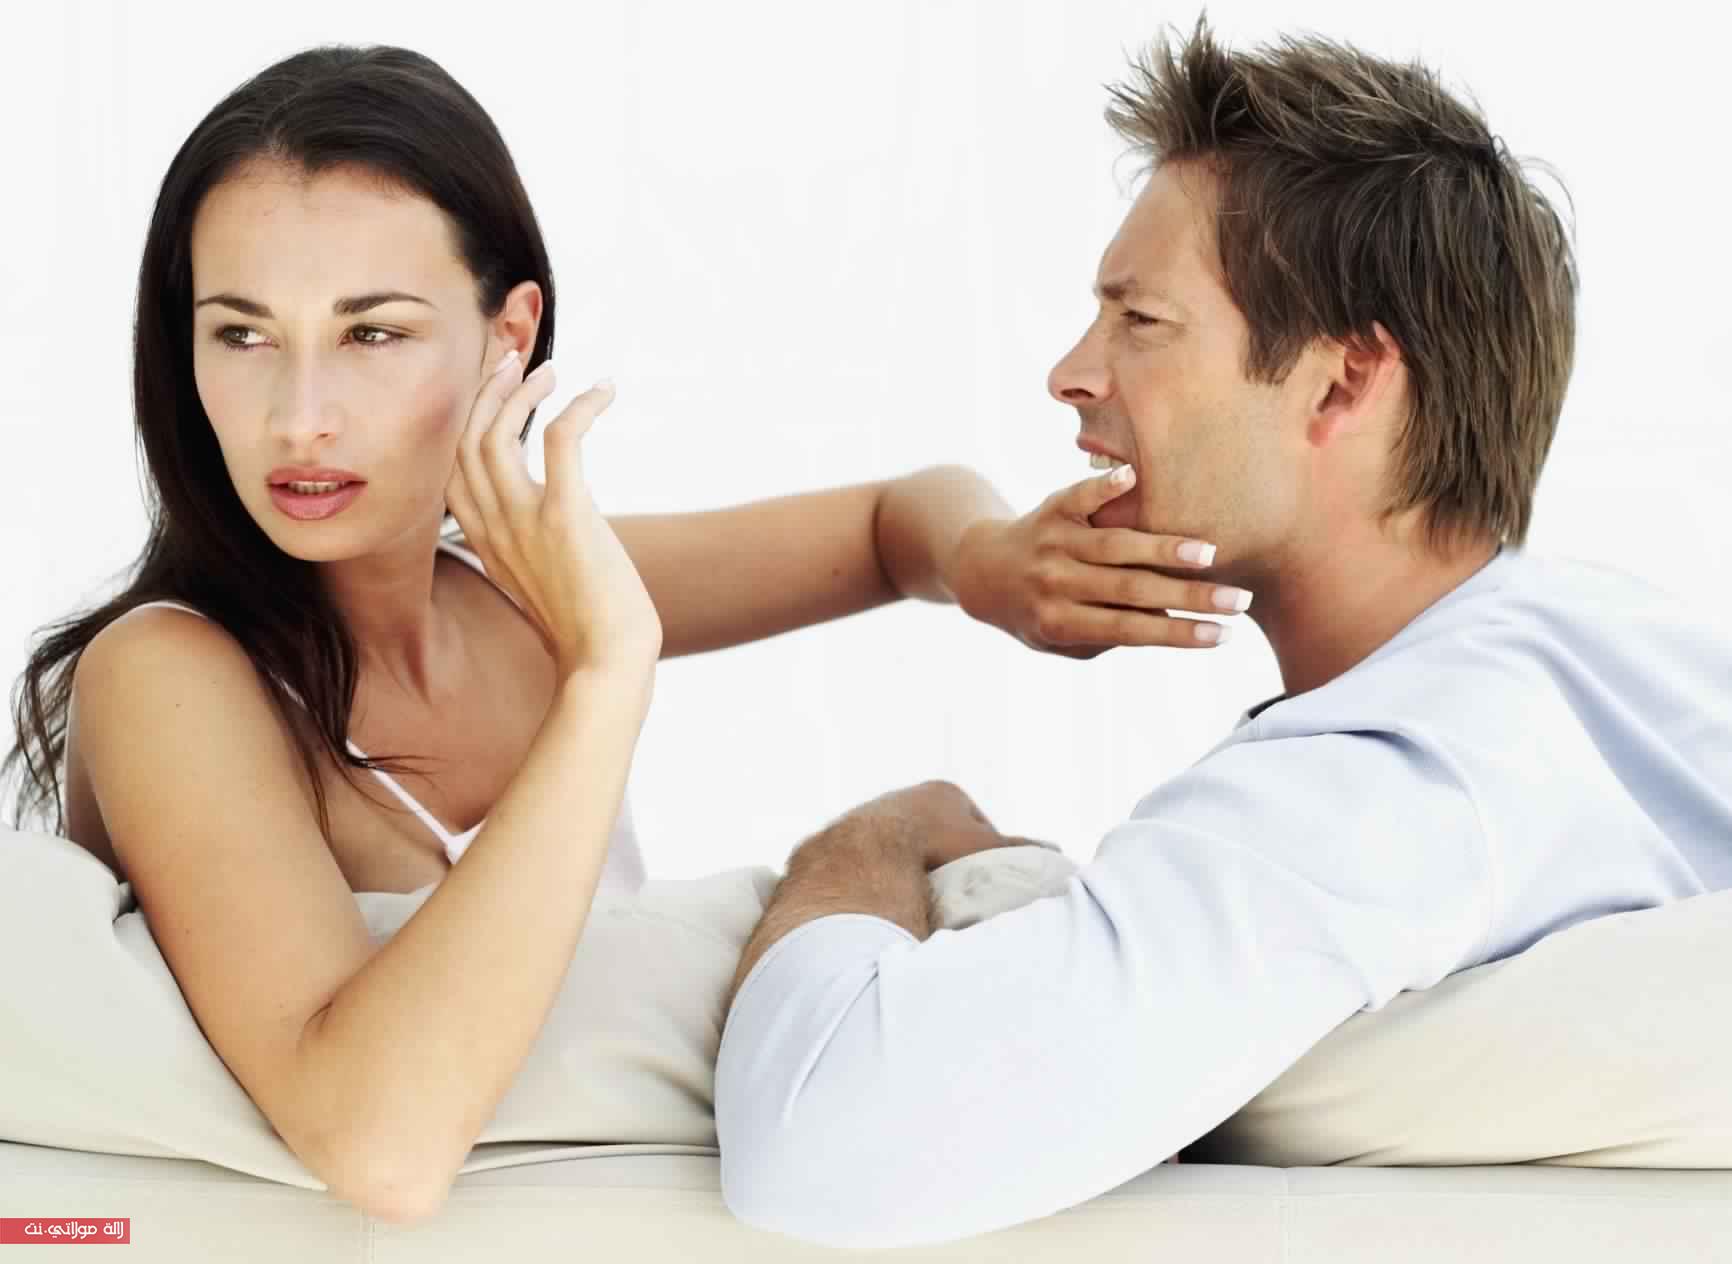 Женщина приглашает мужчину к себе. Мужчина и женщина ссорятся. Психология отношений между мужчиной и женщиной. Ссооа мужчины и женщин. Взаимоотношения мужчины и женщины.